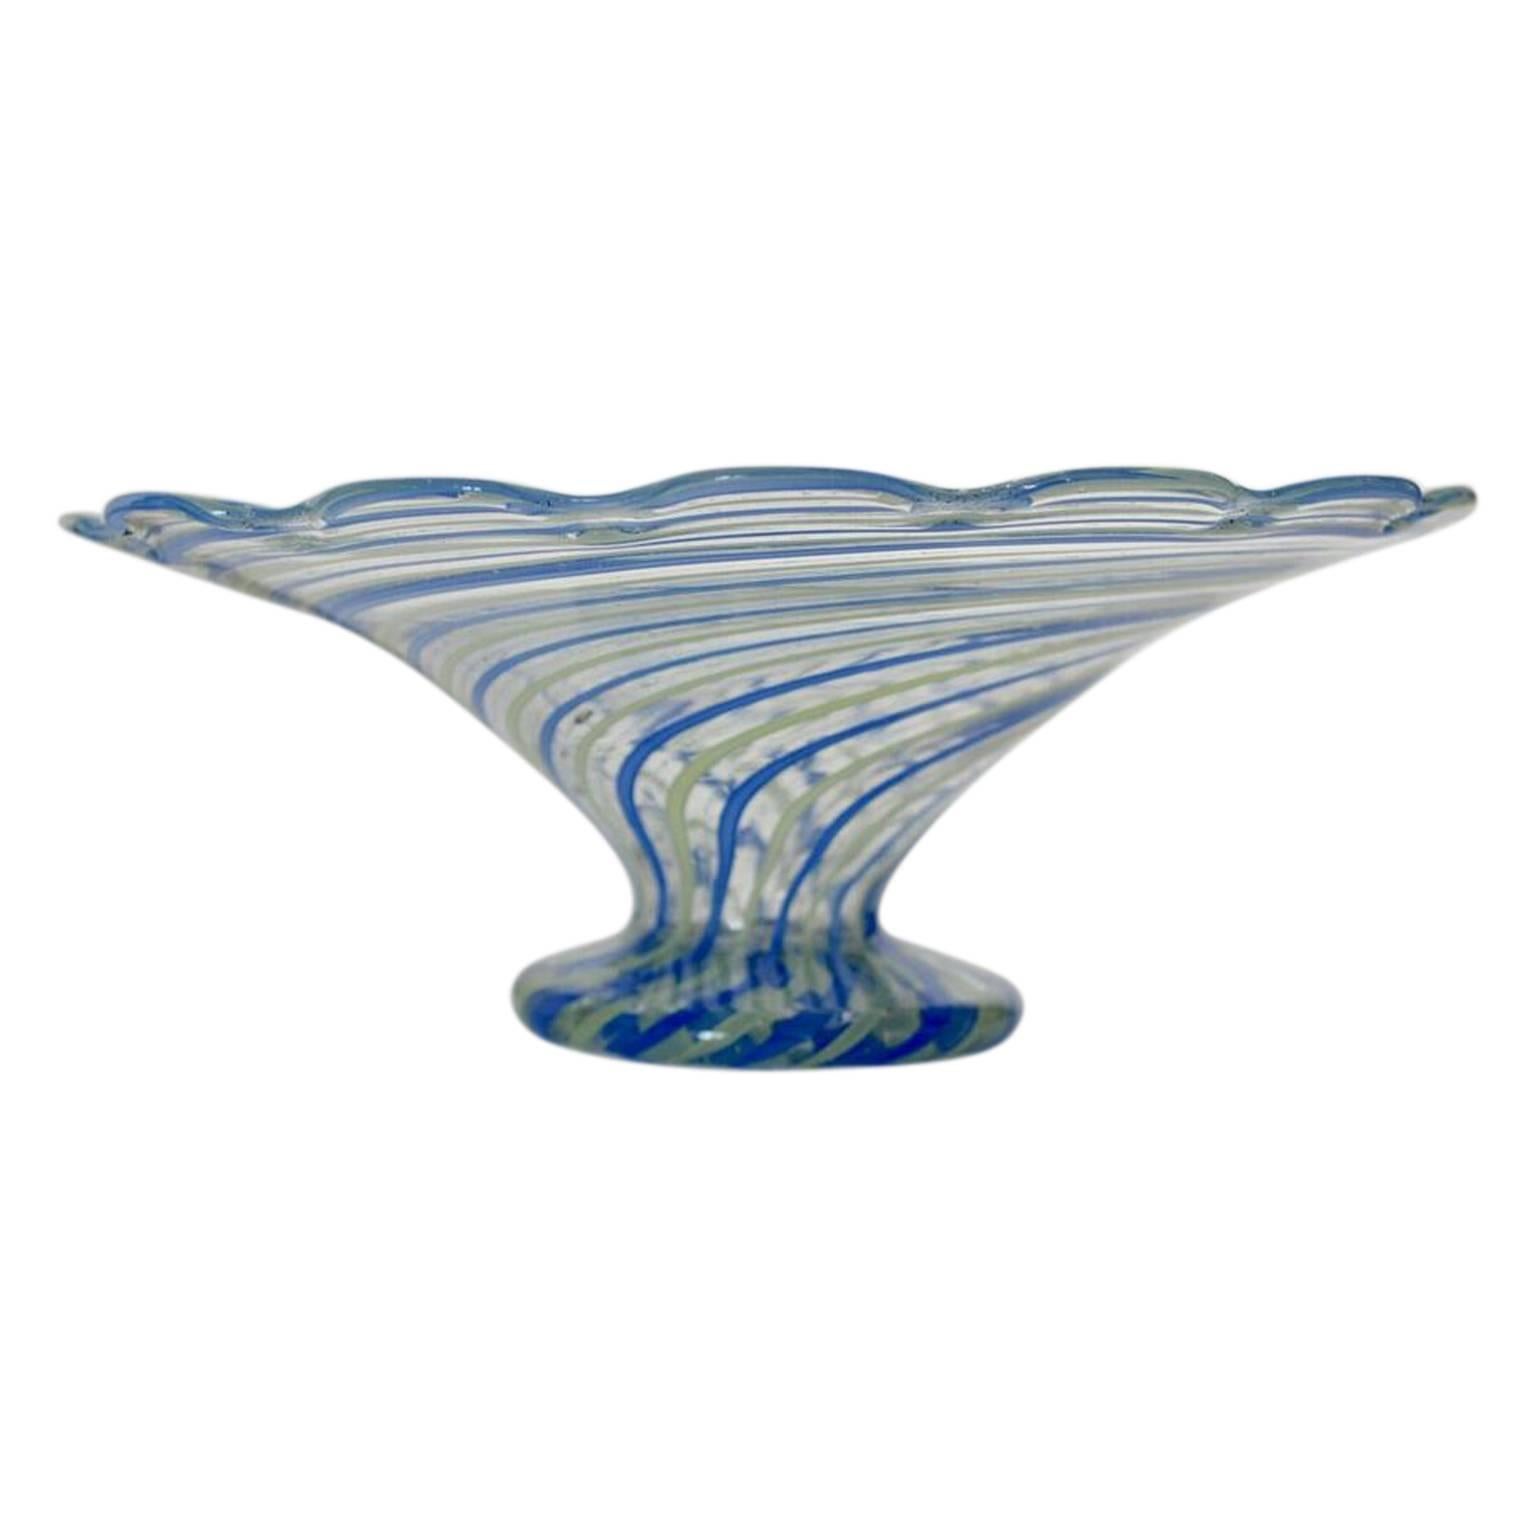 Un superbe plat/bol à piédestal vintage en verre italien de Murano soufflé à la main, avec des inclusions de rubans blancs, bleus et jaunes. Datant du début ou du milieu du 20e siècle. Ce bol en verre de forme arrondie, finement réalisé, repose sur